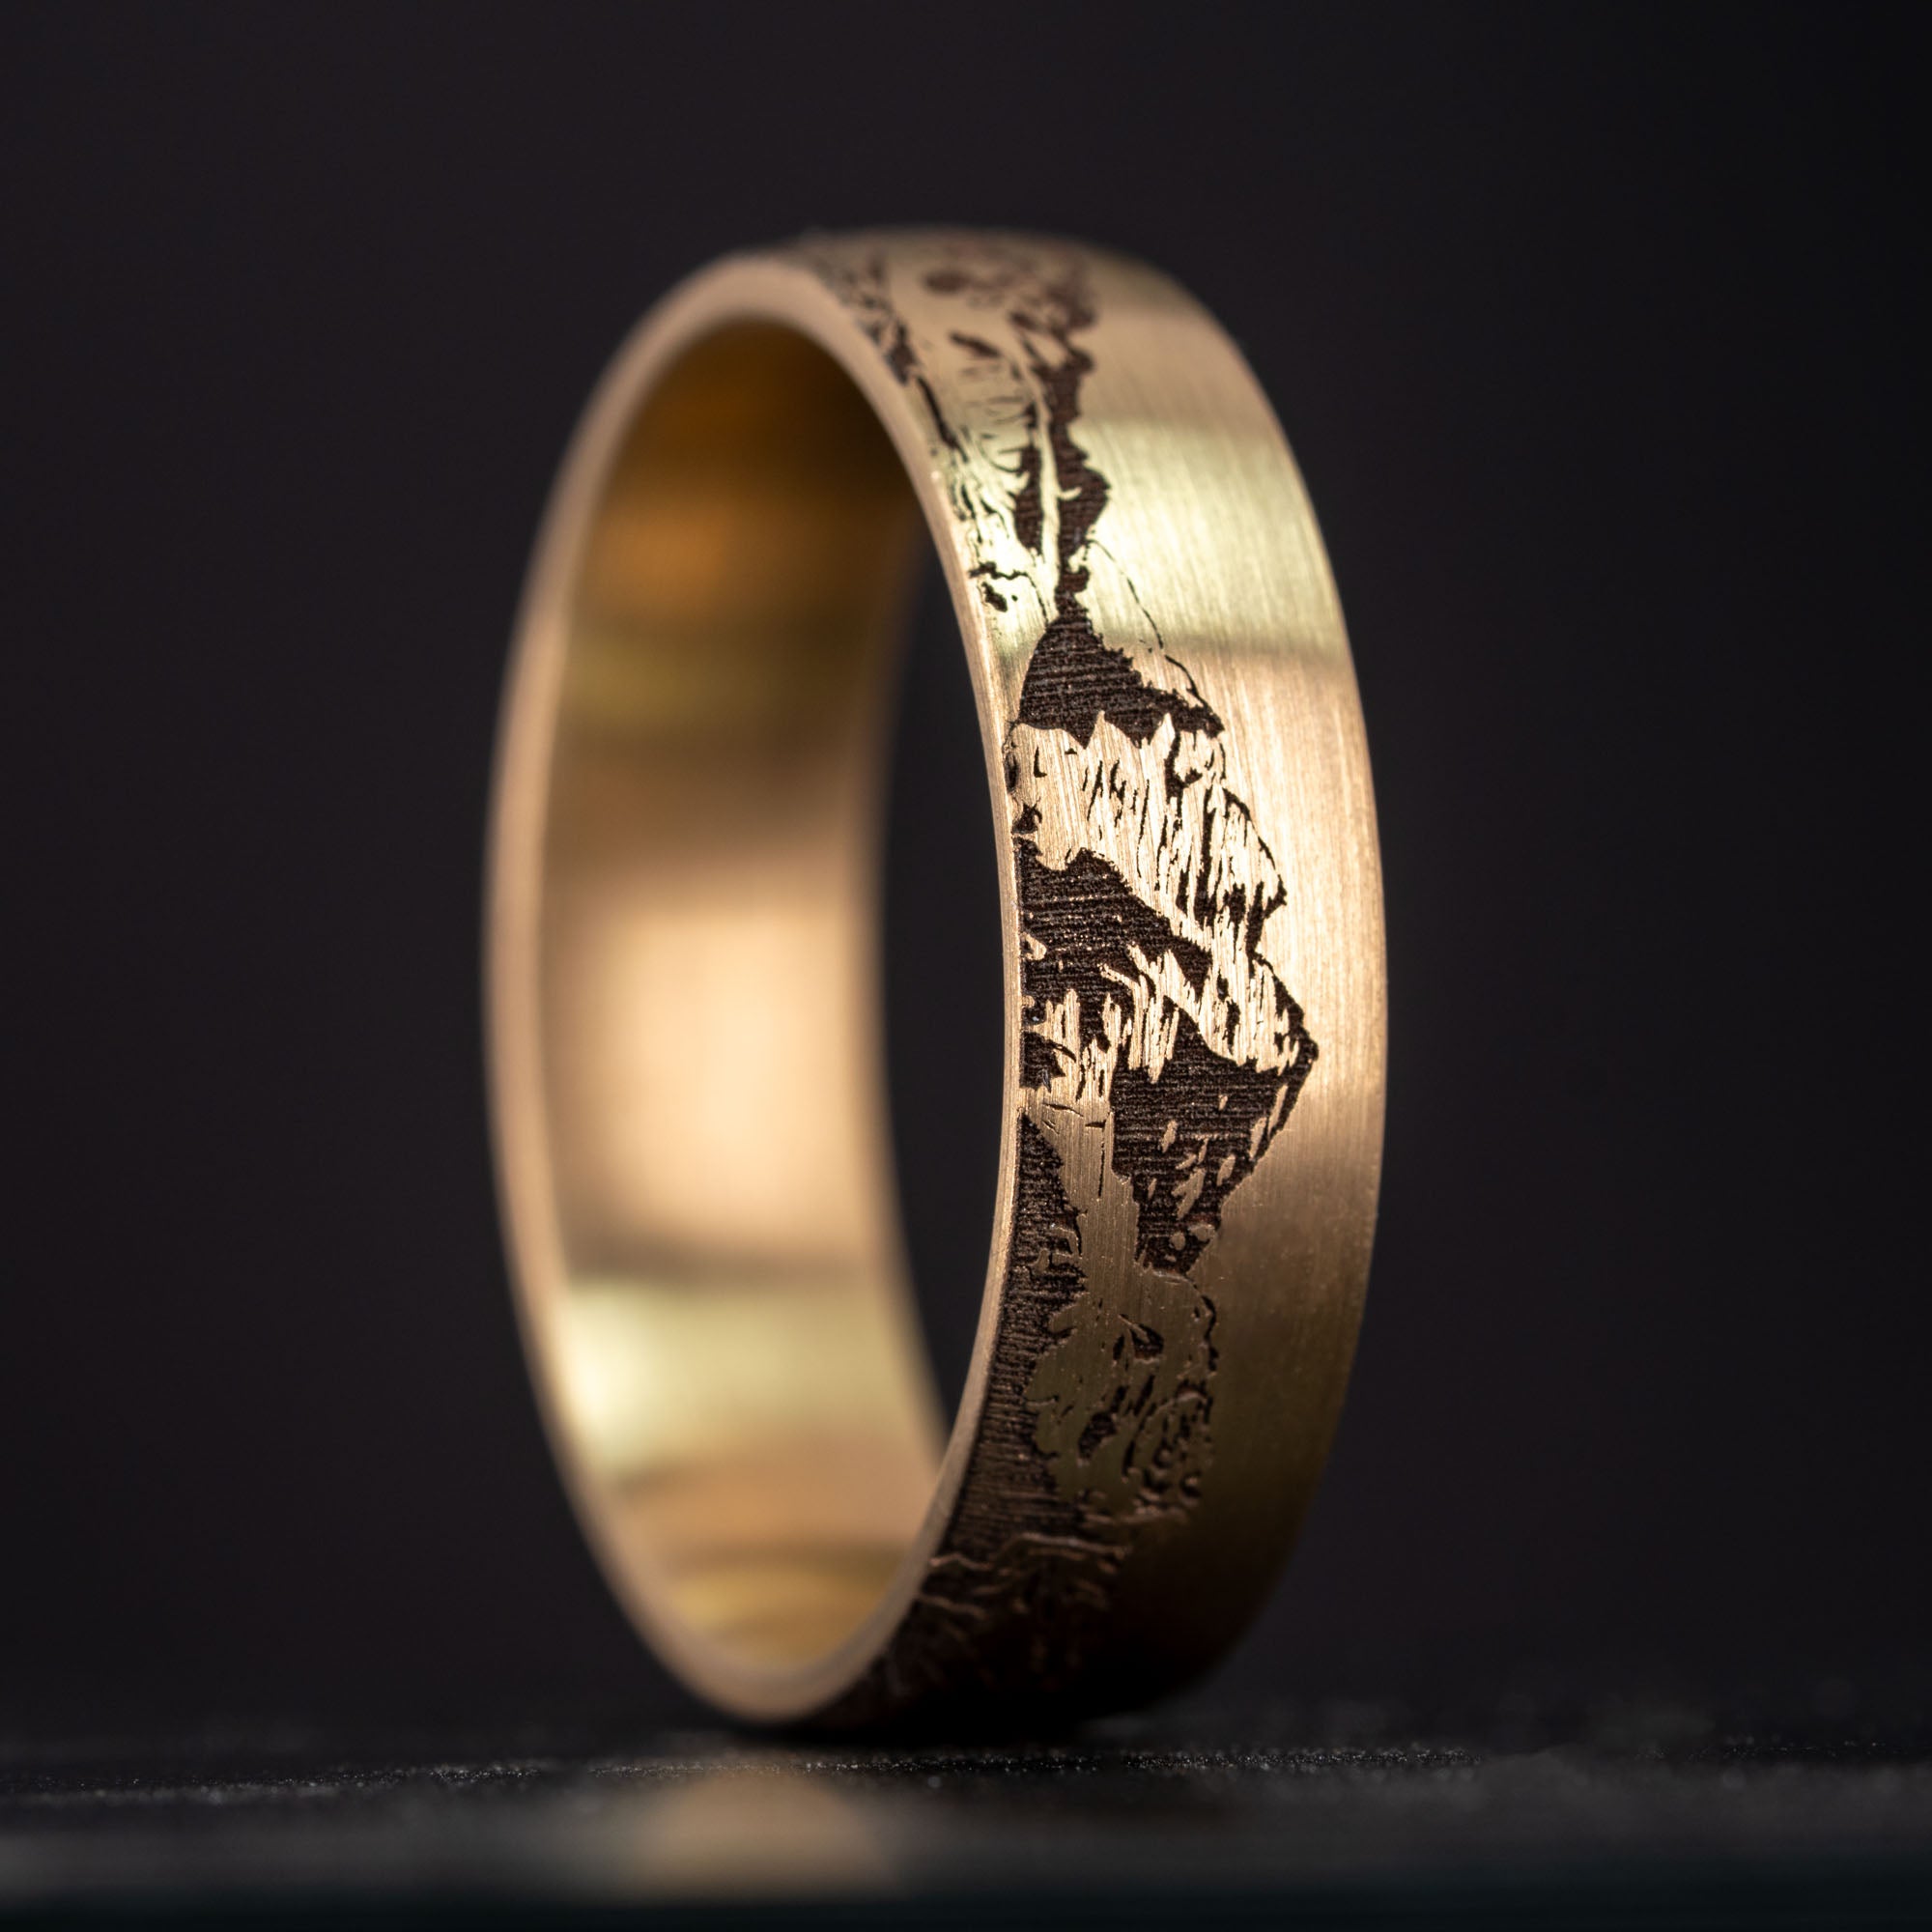 Brushed Gold Engraved Colorado 14er Ring